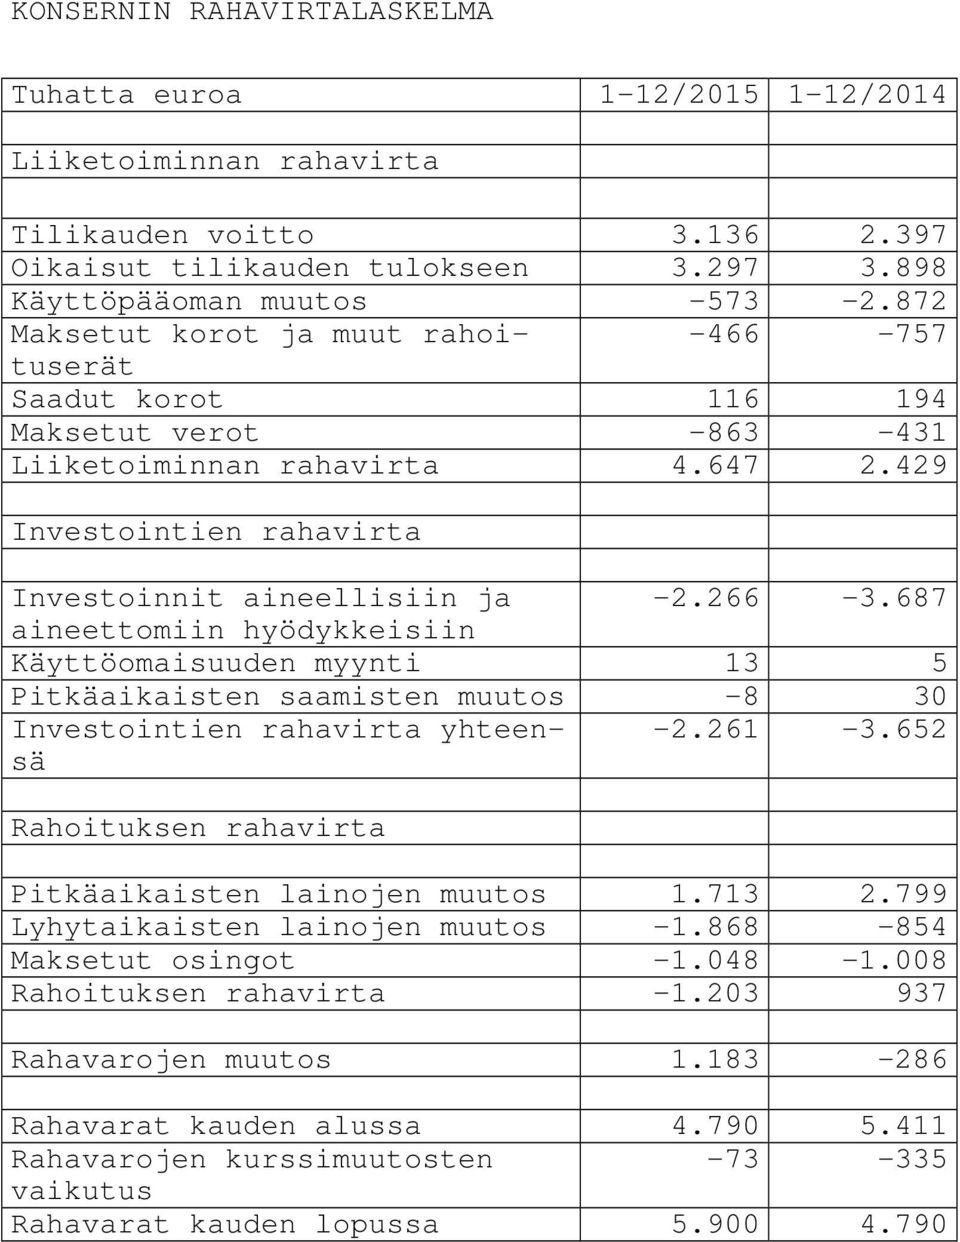 687 aineettomiin hyödykkeisiin Käyttöomaisuuden myynti 13 5 Pitkäaikaisten saamisten muutos -8 30 Investointien rahavirta yhteensä -2.261-3.652 Rahoituksen rahavirta Pitkäaikaisten lainojen muutos 1.